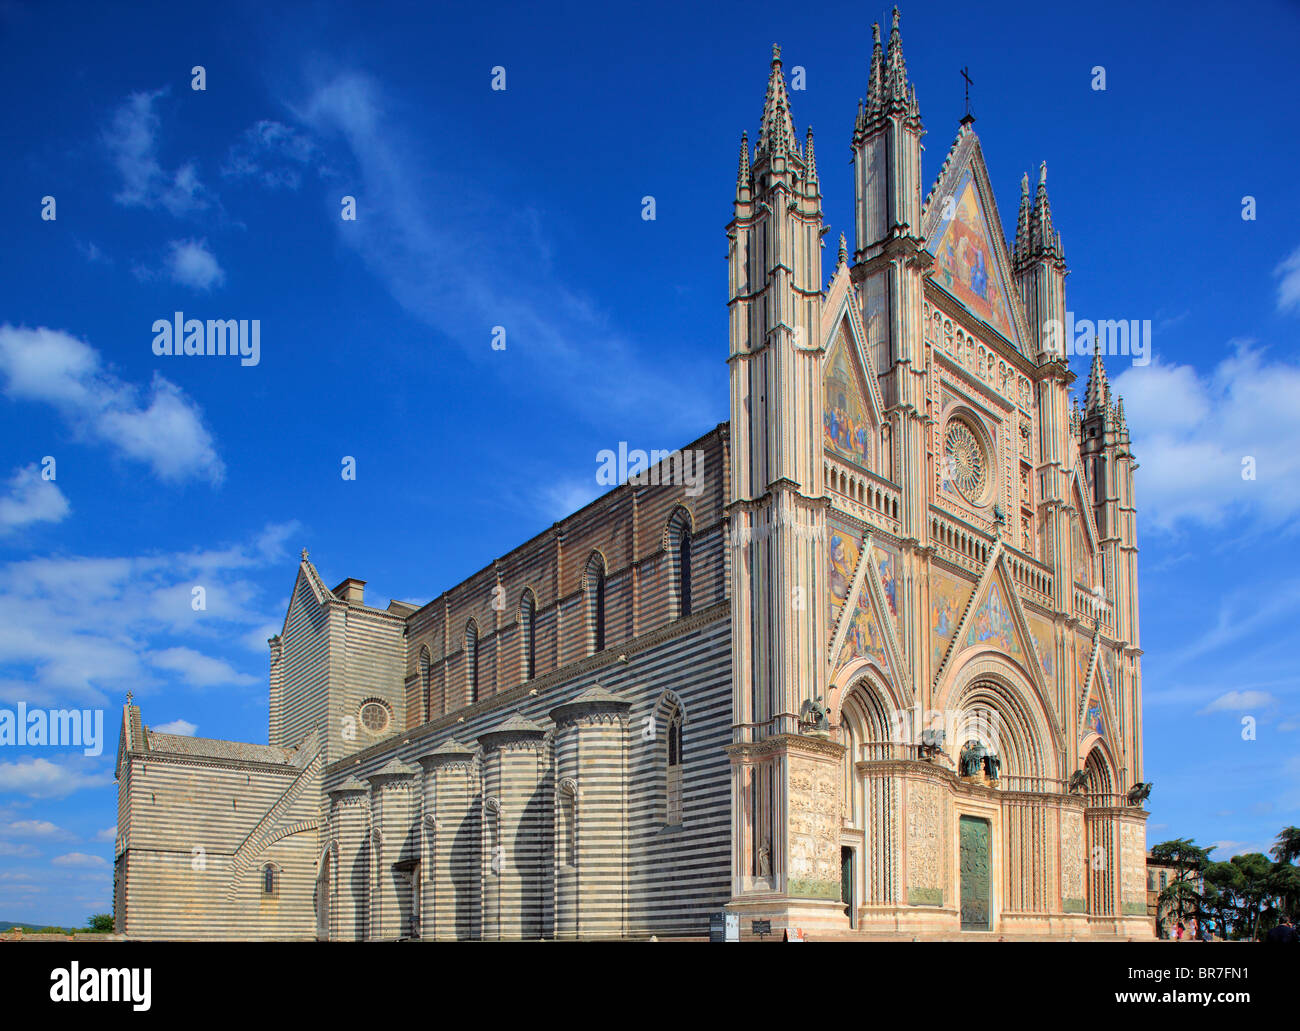 Der Duomo di Orvieto ist eine große 14. Jahrhundert römisch-katholische Kathedrale befindet sich in der Stadt Orvieto in Umbrien, Mittelitalien. Stockfoto